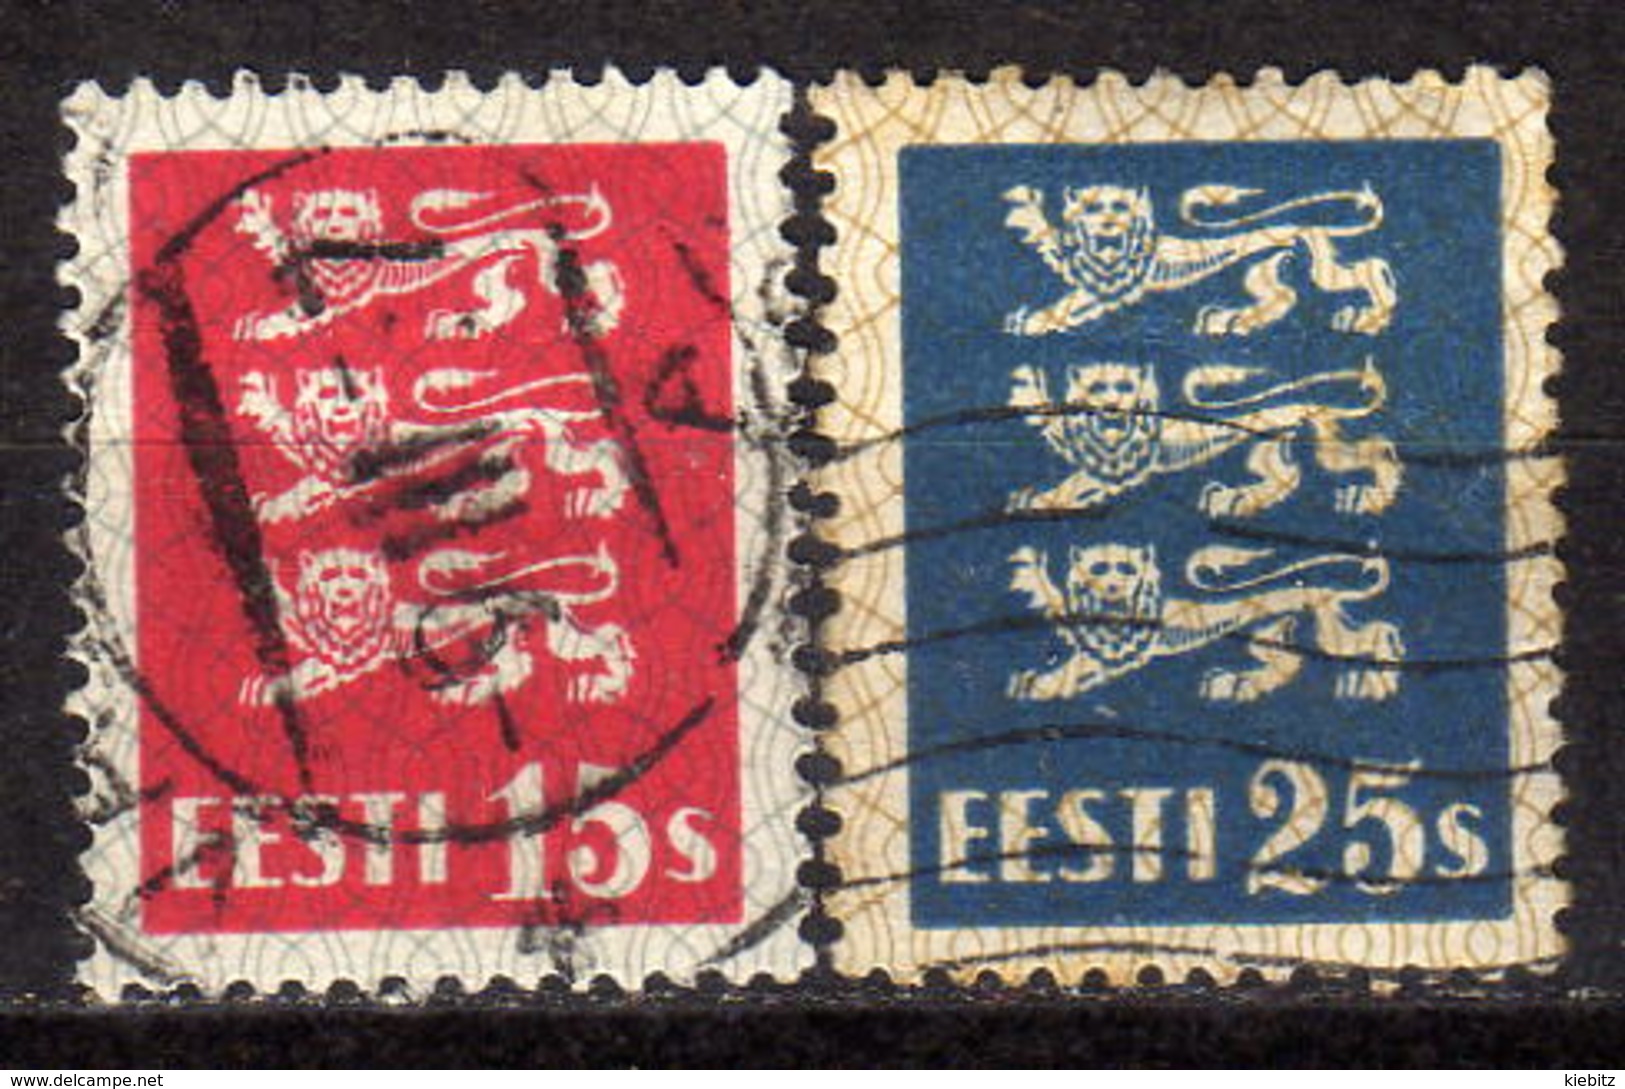 ESTLAND 1935 - MiNr: 106-107  Komplett Used - Estland